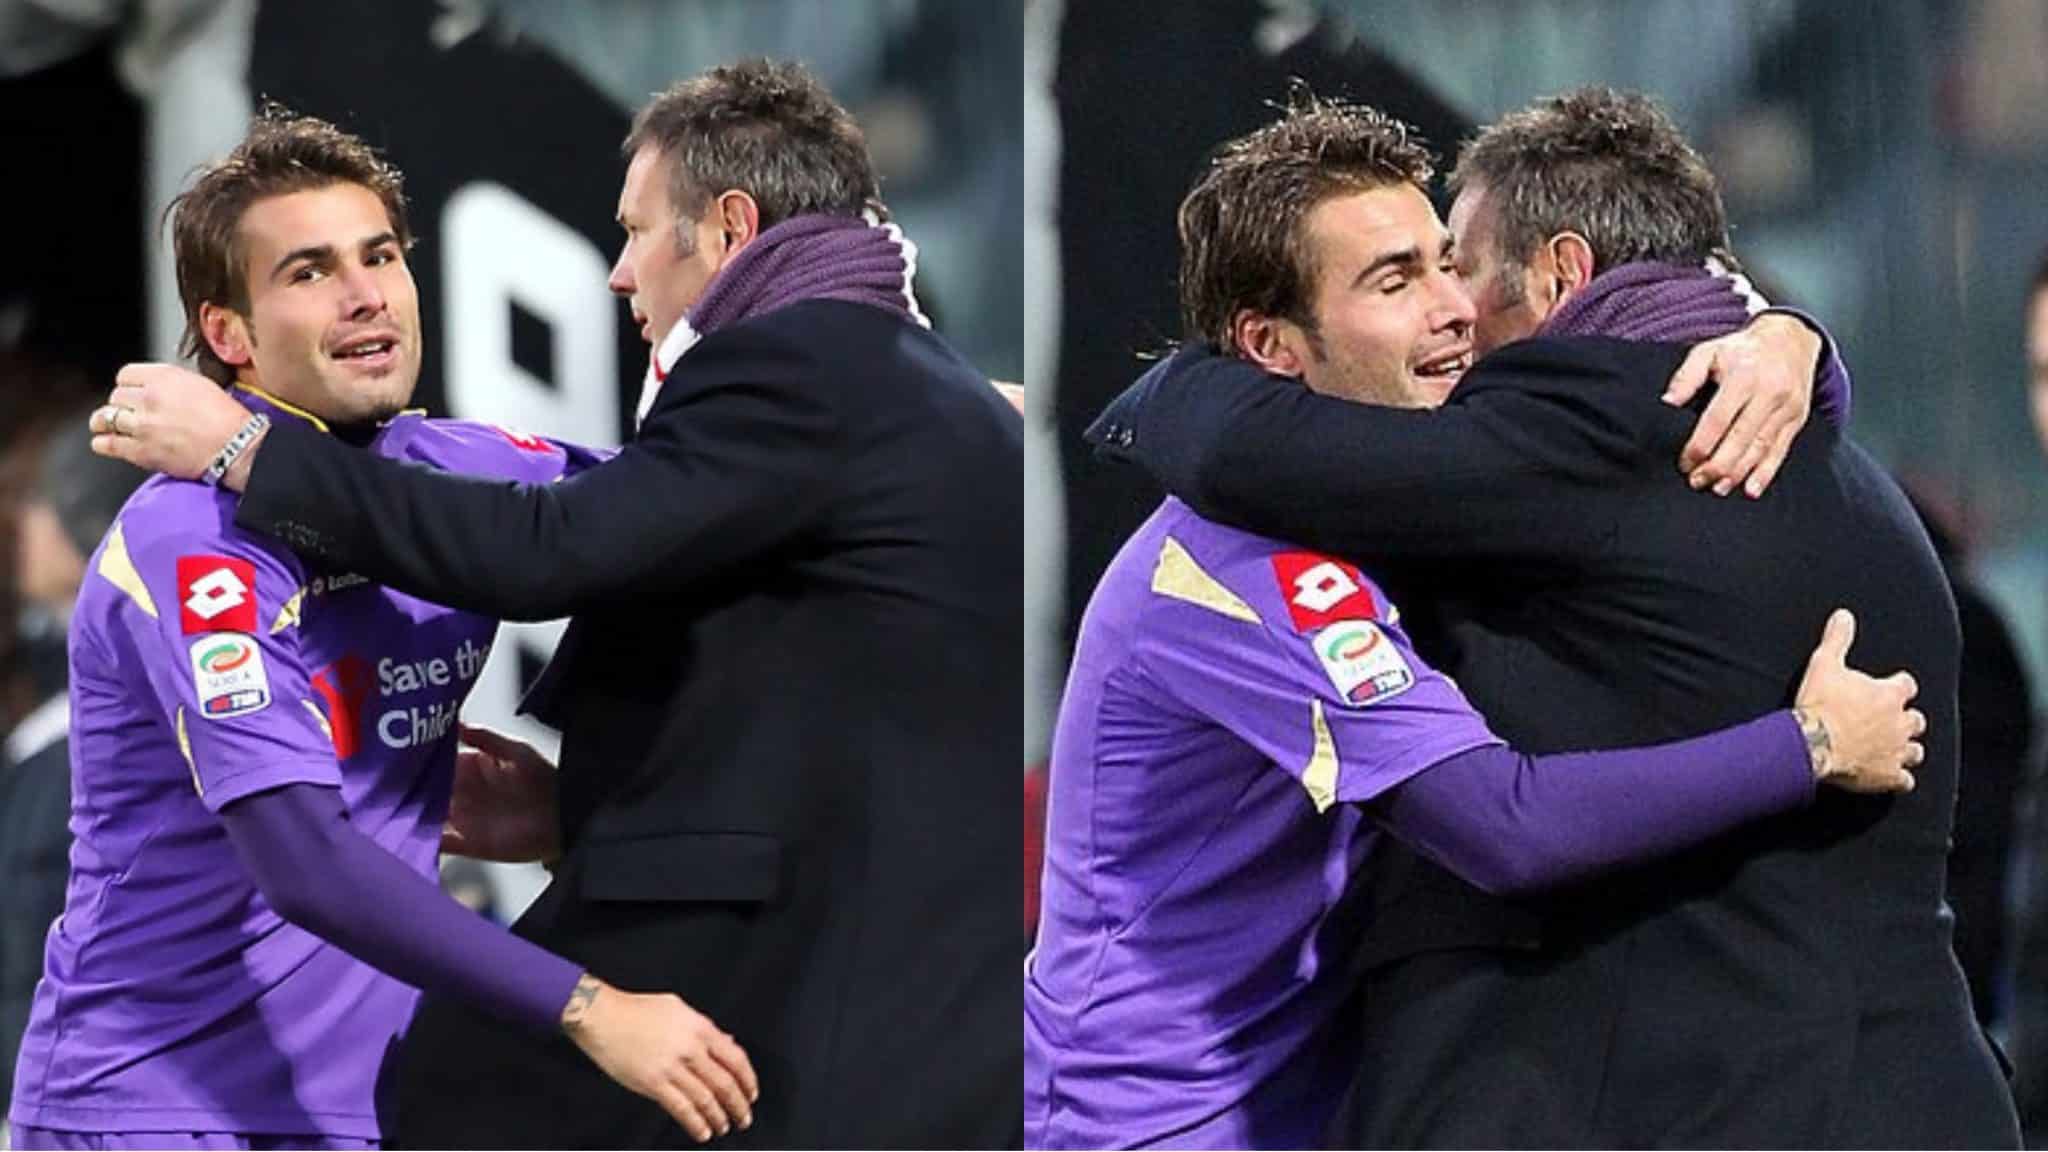 Mutu pleure Mihajlovic, les deux étaient ensemble à la Fiorentina : « Au revoir Sinisa, repose en paix lion »